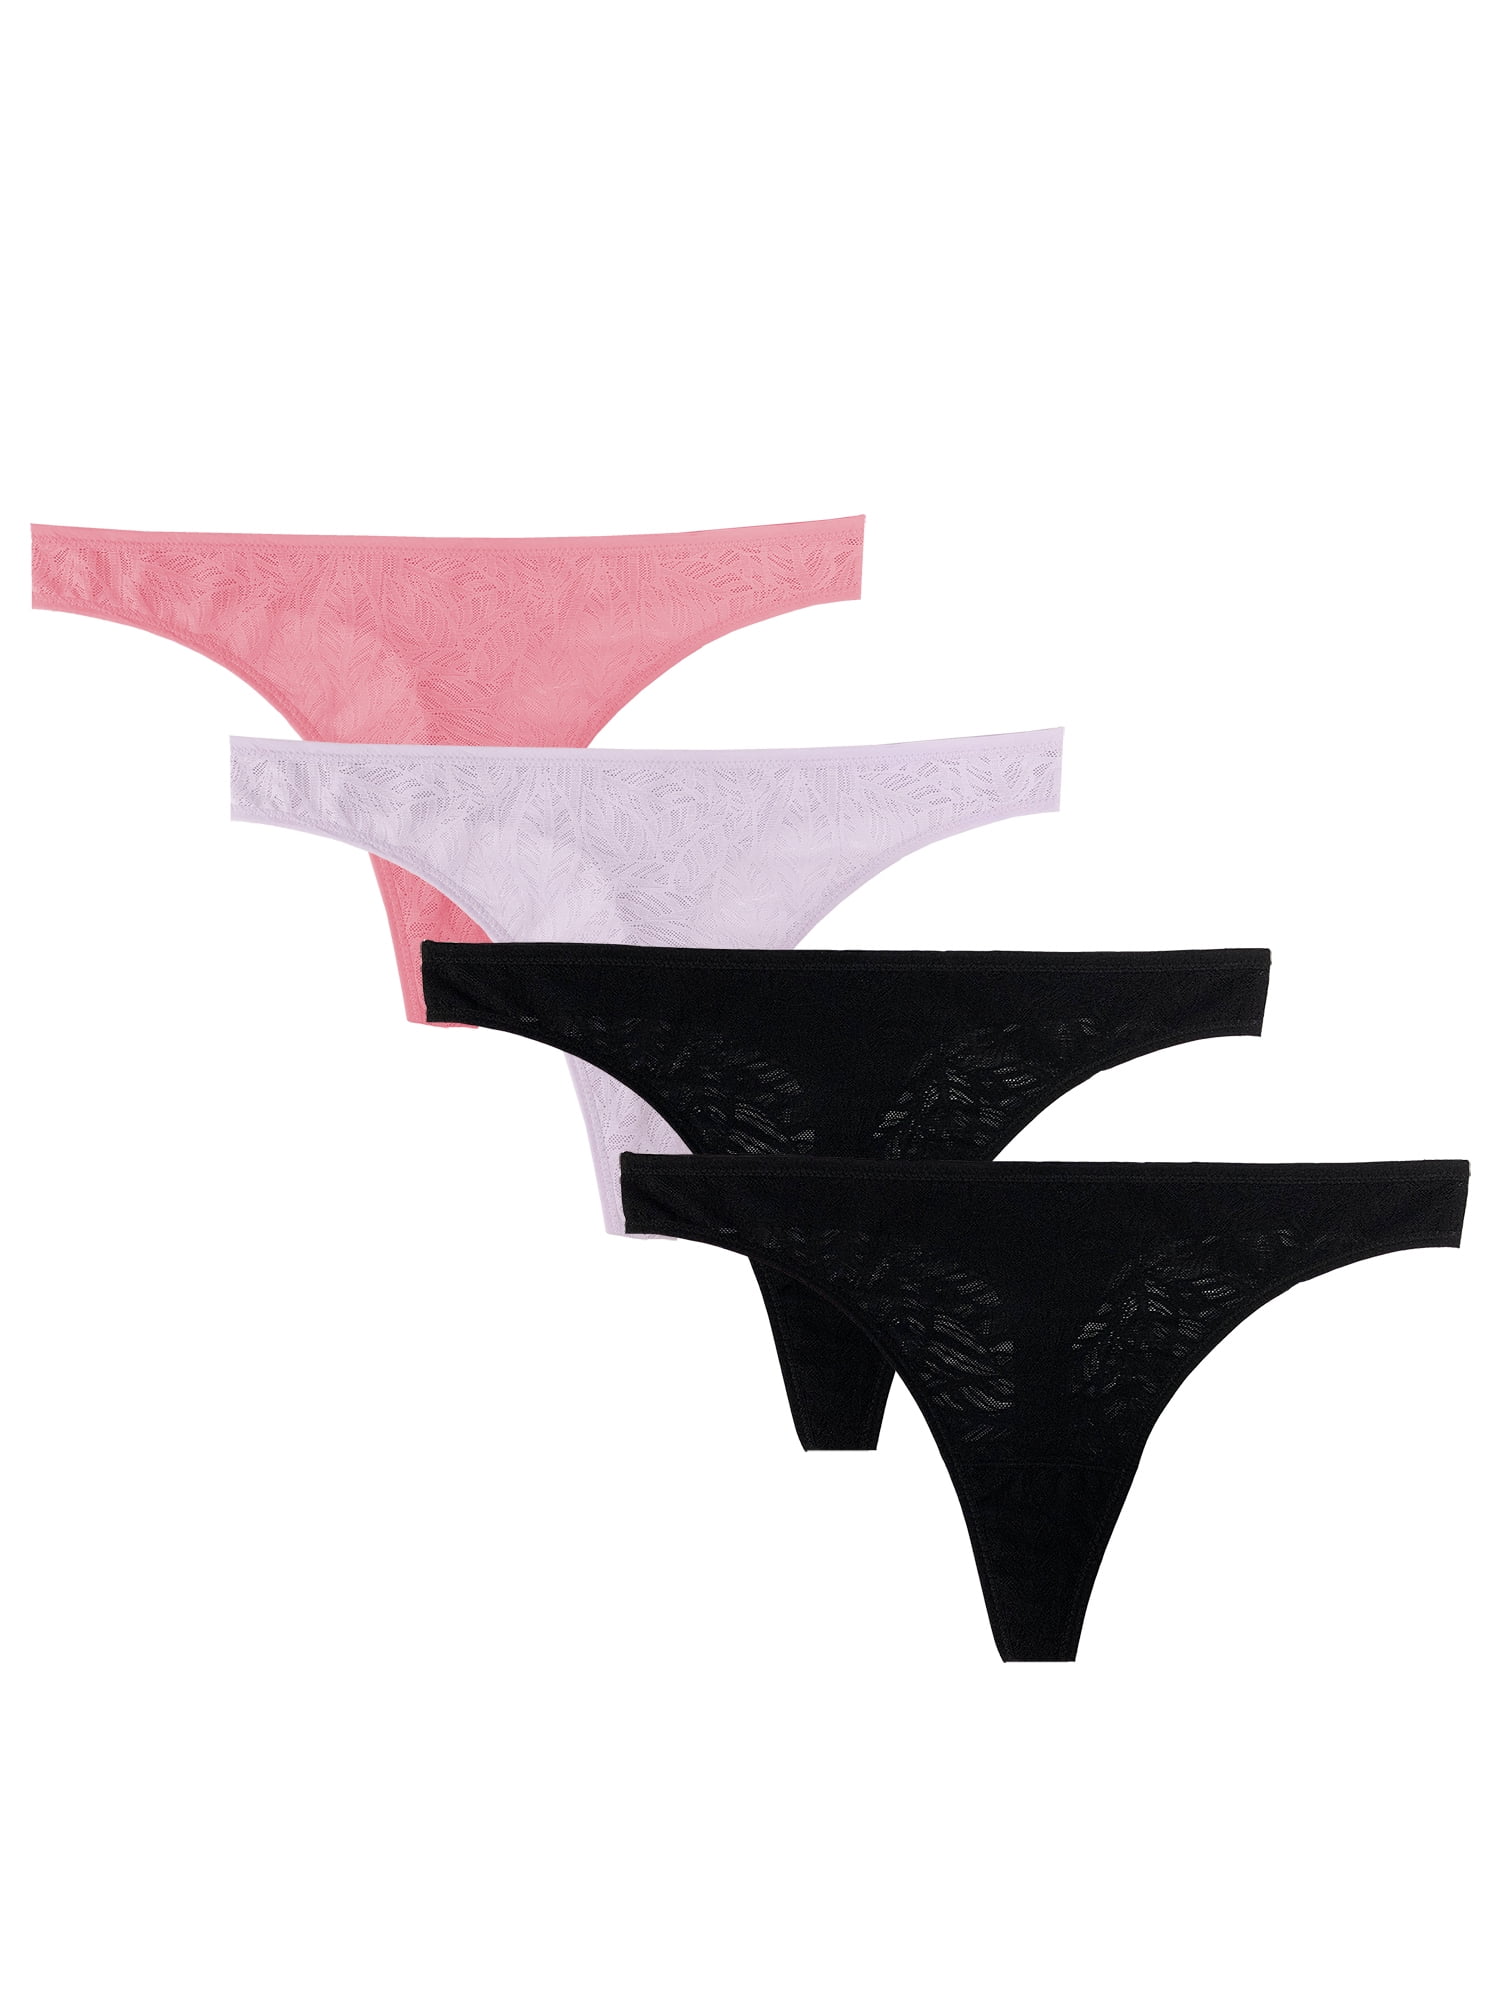 Secret Treasures Lace Briefs Nylon Spandex Panty (Women's) 4 Pack